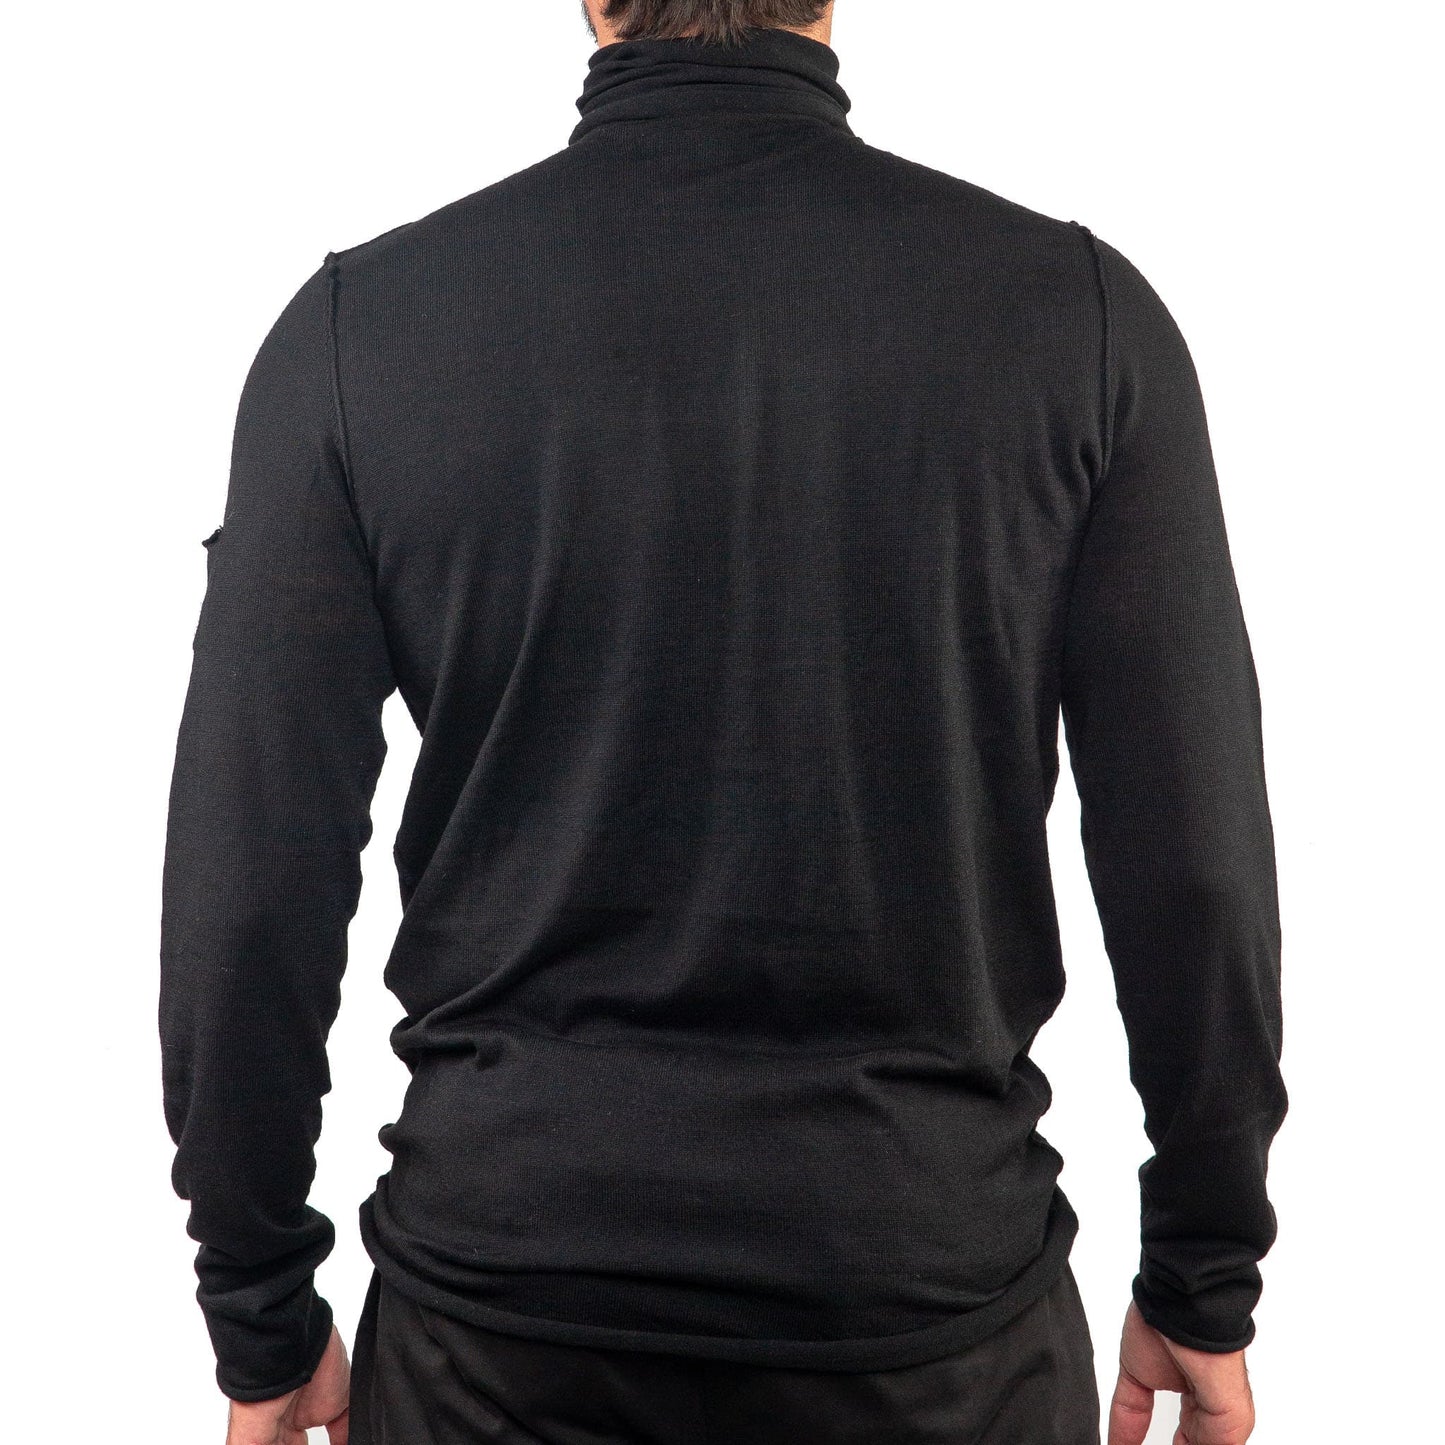 Ανδρική μπλούζα ζιβάγκο σε λεπτή πλέξη full fashion T546M - Shirt Lab store